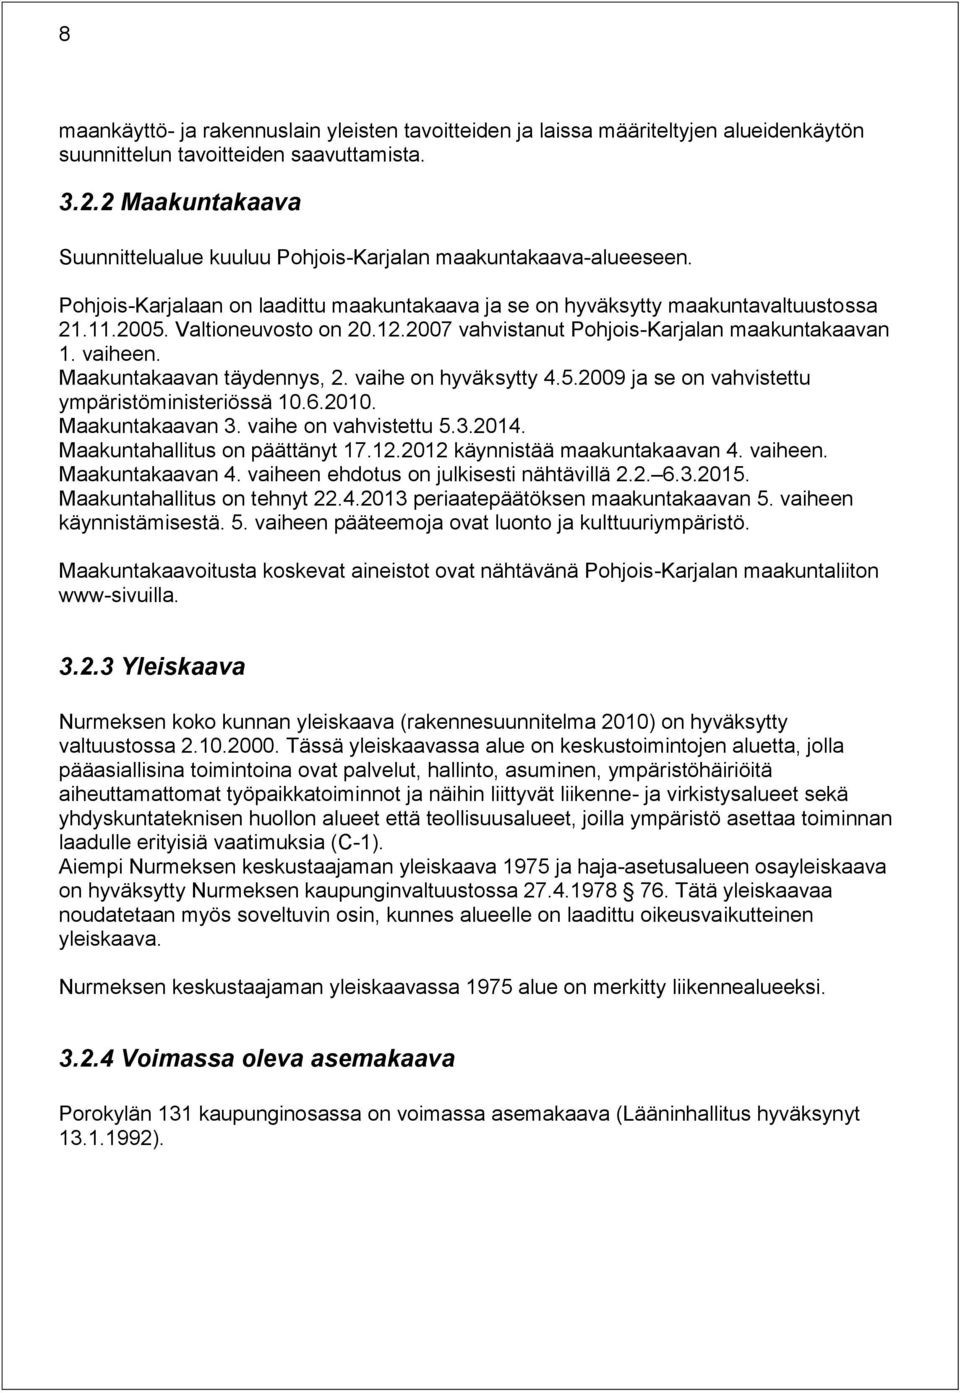 12.2007 vahvistanut Pohjois-Karjalan maakuntakaavan 1. vaiheen. Maakuntakaavan täydennys, 2. vaihe on hyväksytty 4.5.2009 ja se on vahvistettu ympäristöministeriössä 10.6.2010. Maakuntakaavan 3.